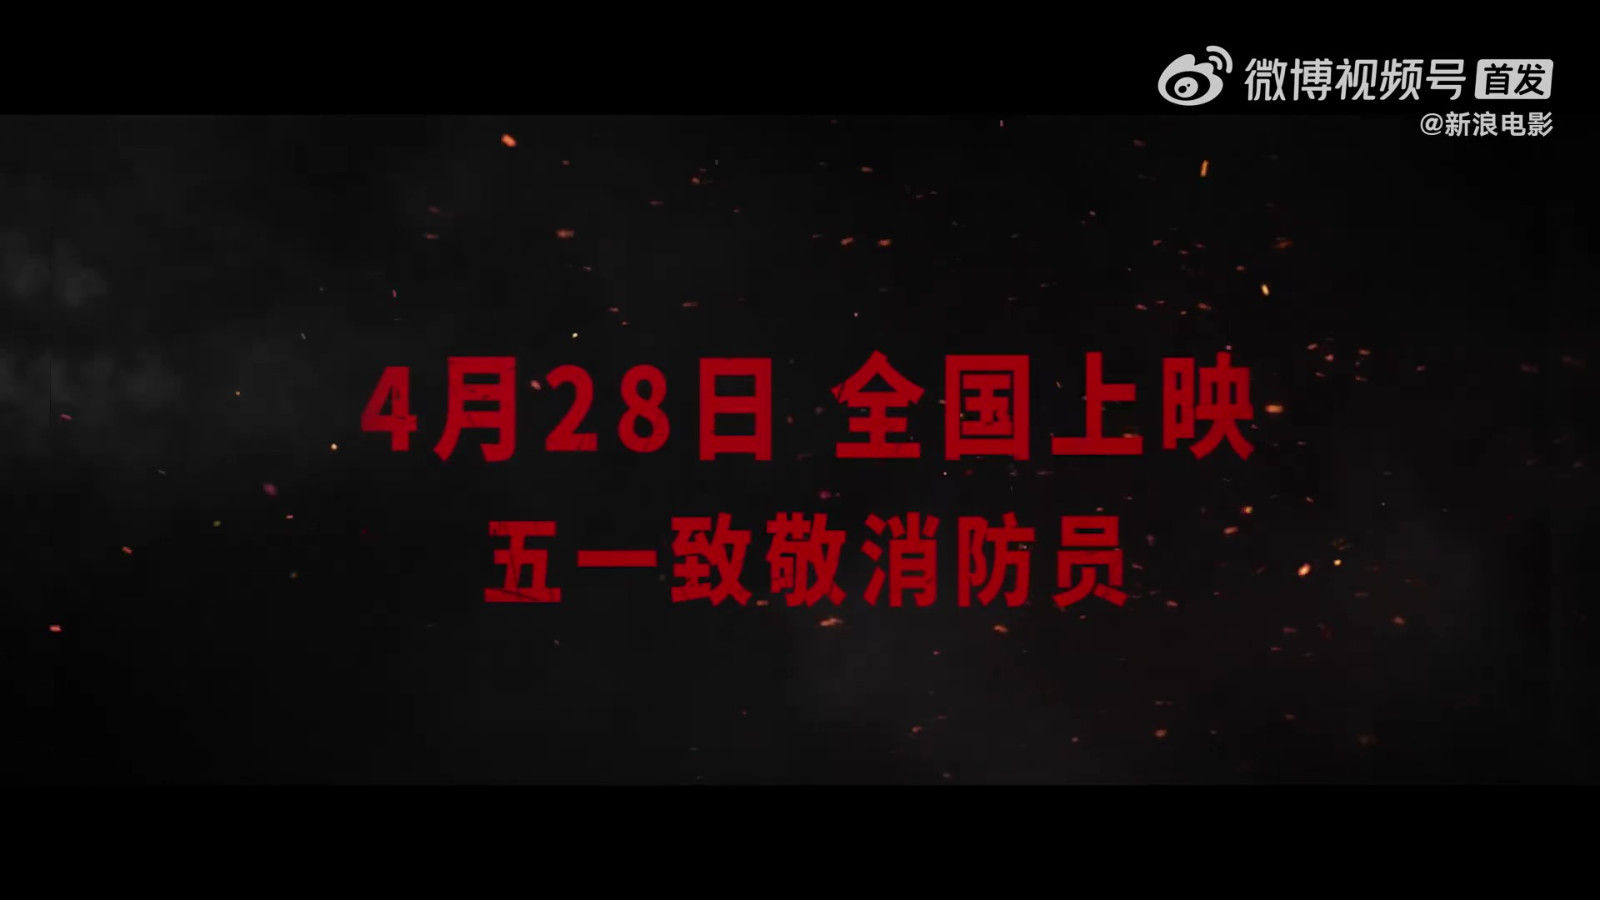 灾难动作片《惊天救援》定档预告 4月28日上映